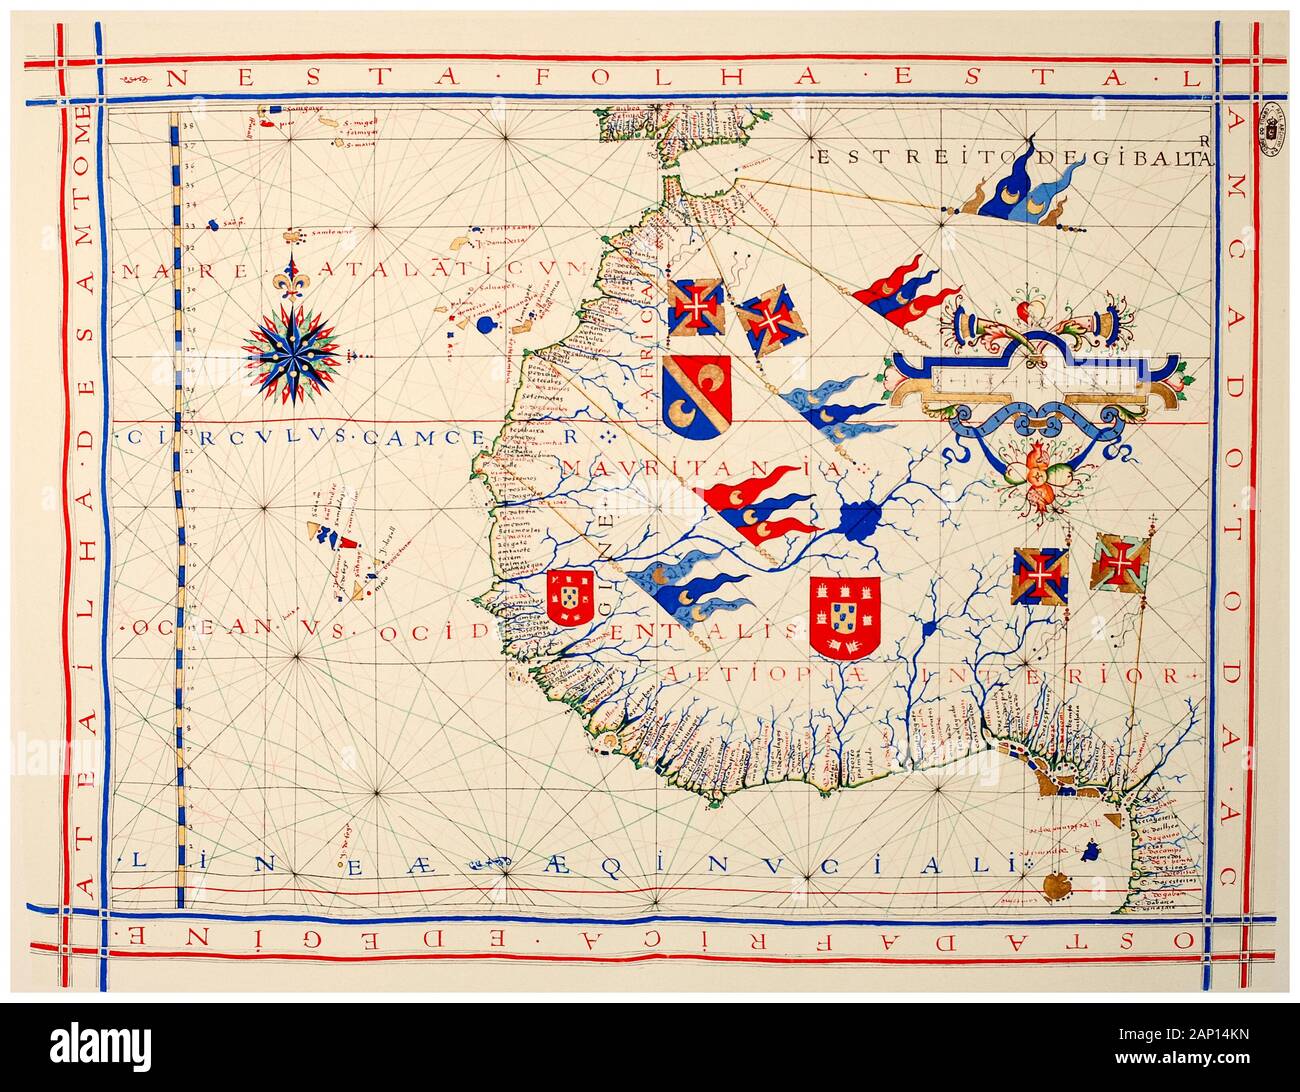 Il vecchio xvi secolo Vintage map dell Africa occidentale in una carta nautica del cartografo portoghese Fernão Vaz Dourado, illustrazione, 1571 Foto Stock